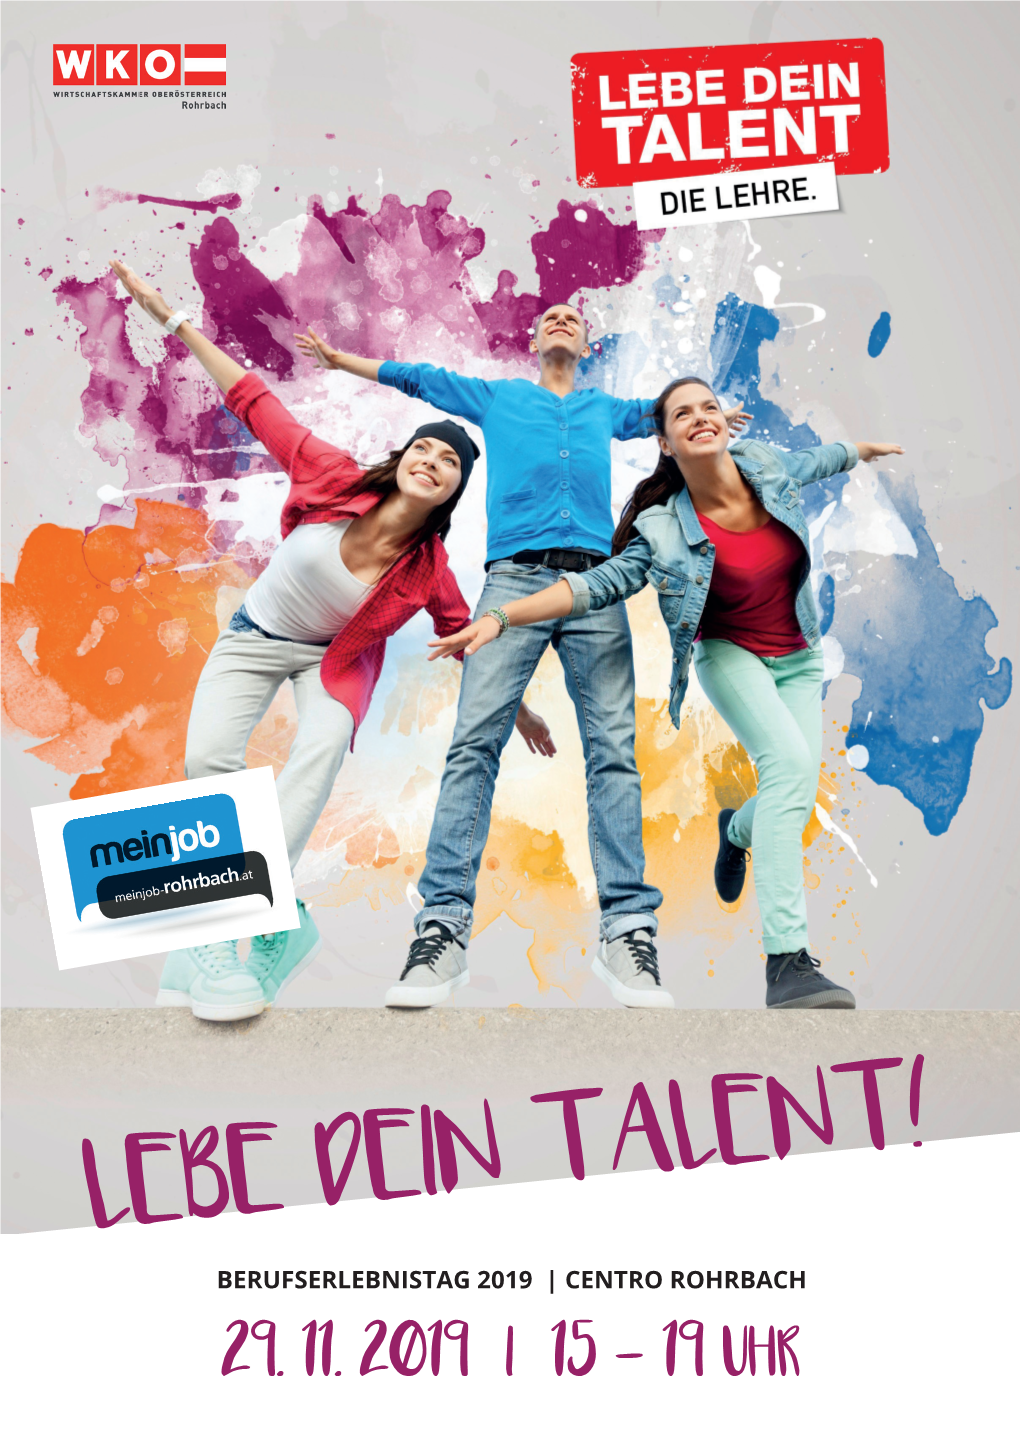 Lebe Dein Talent! Berufserlebnistag 2019 | Centro Rohrbach